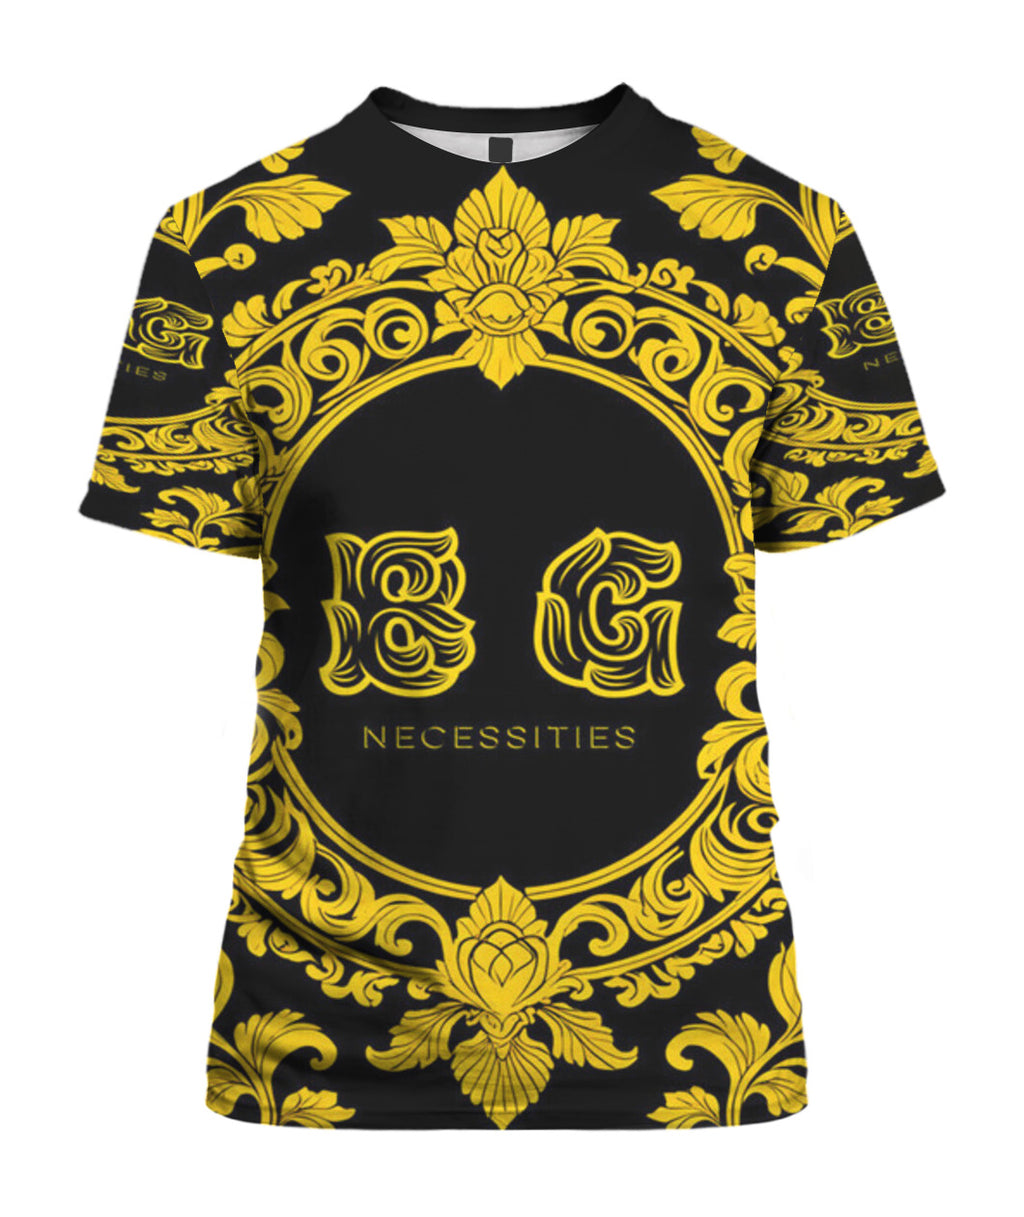 BG Black and Yellow Necessities Unisex T-Shirt by Burning Guitars